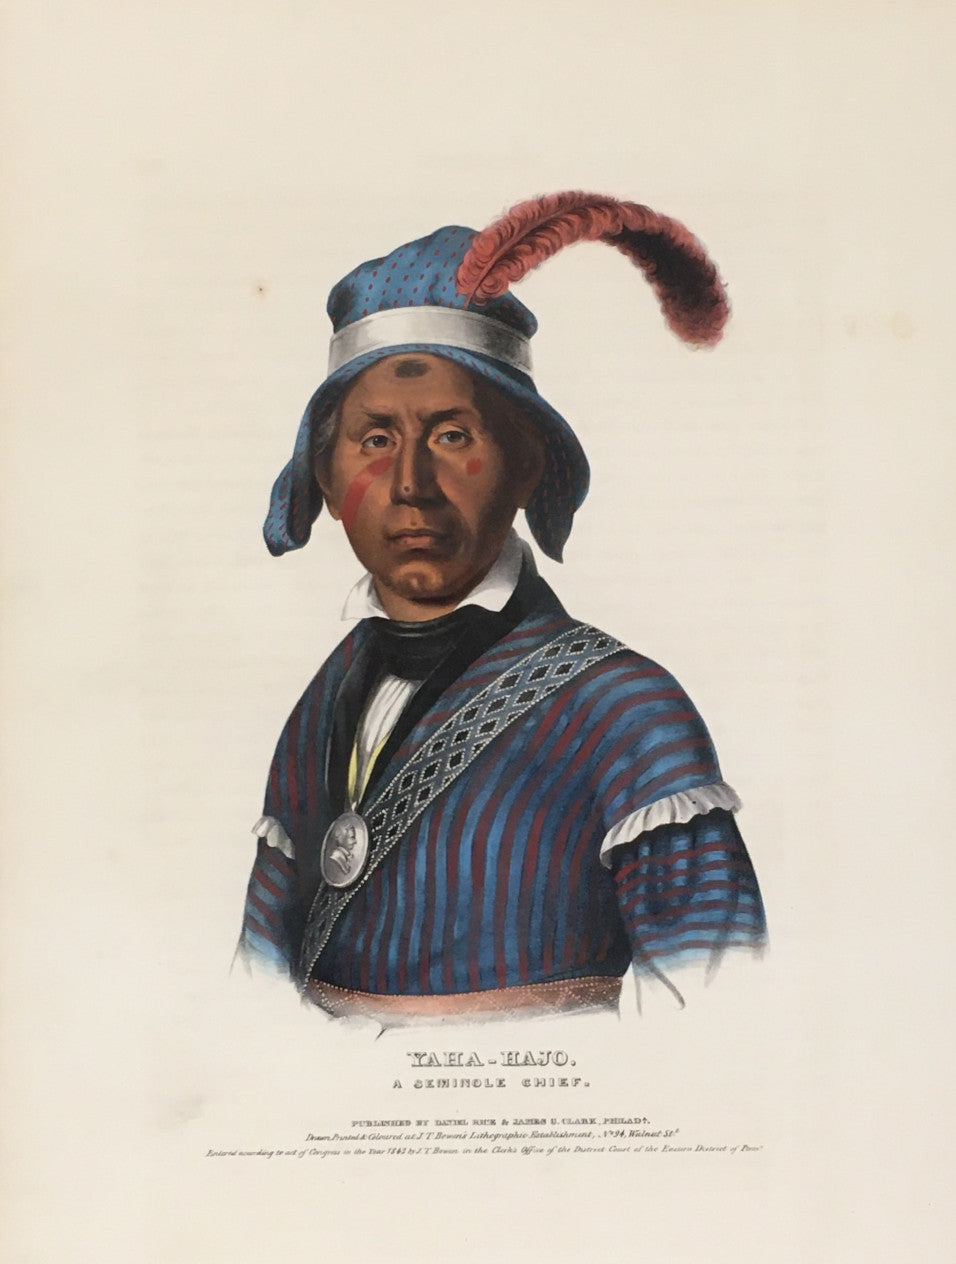 King, Charles Bird “Yaha-Hajo. A Seminole Chief”